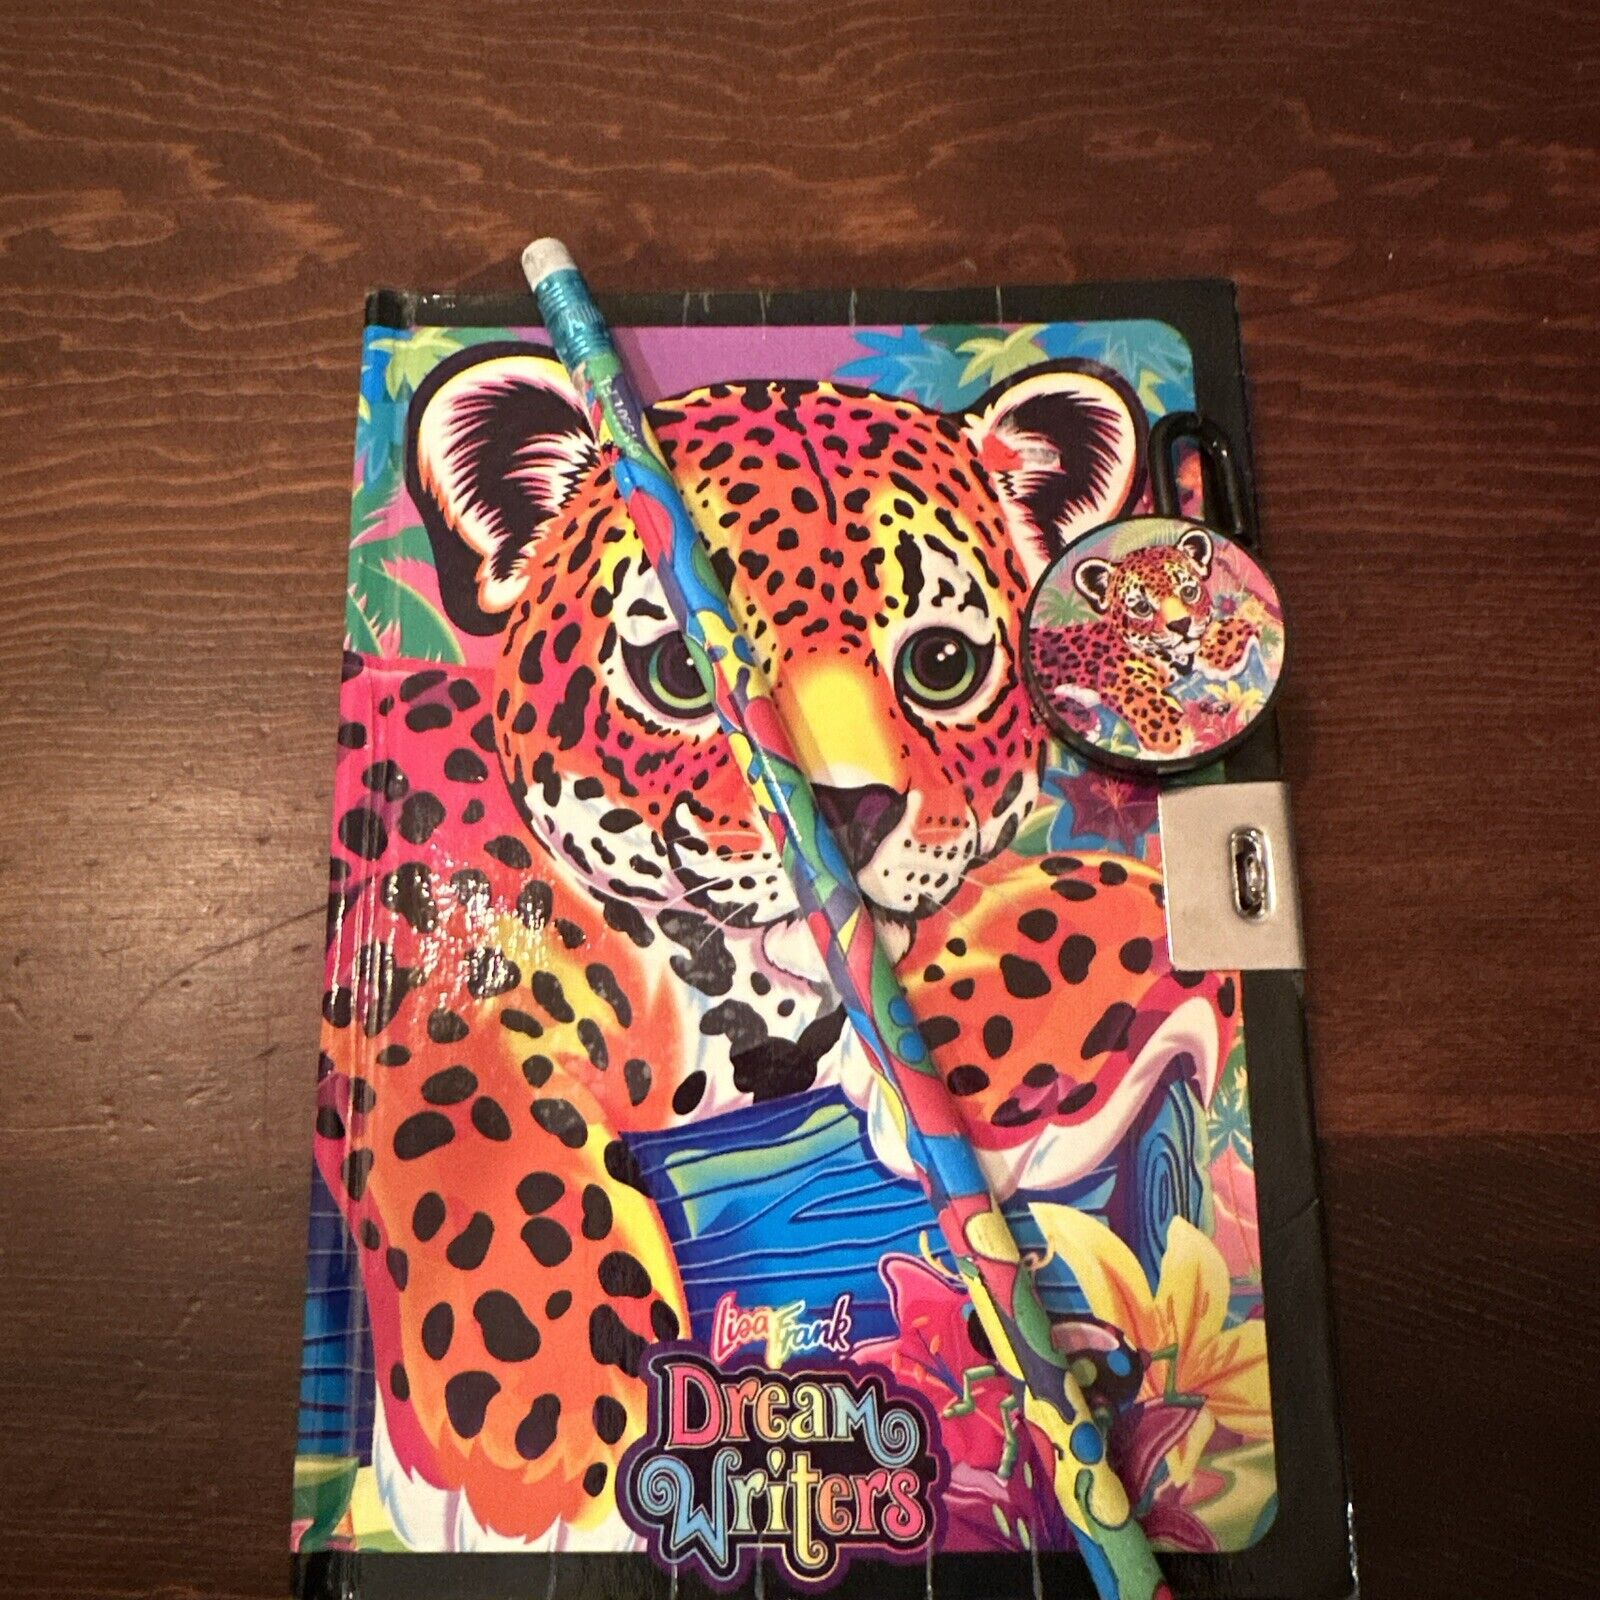 Vintage Lisa Frank Dream Writers Cheetah Journal Notebook Diary